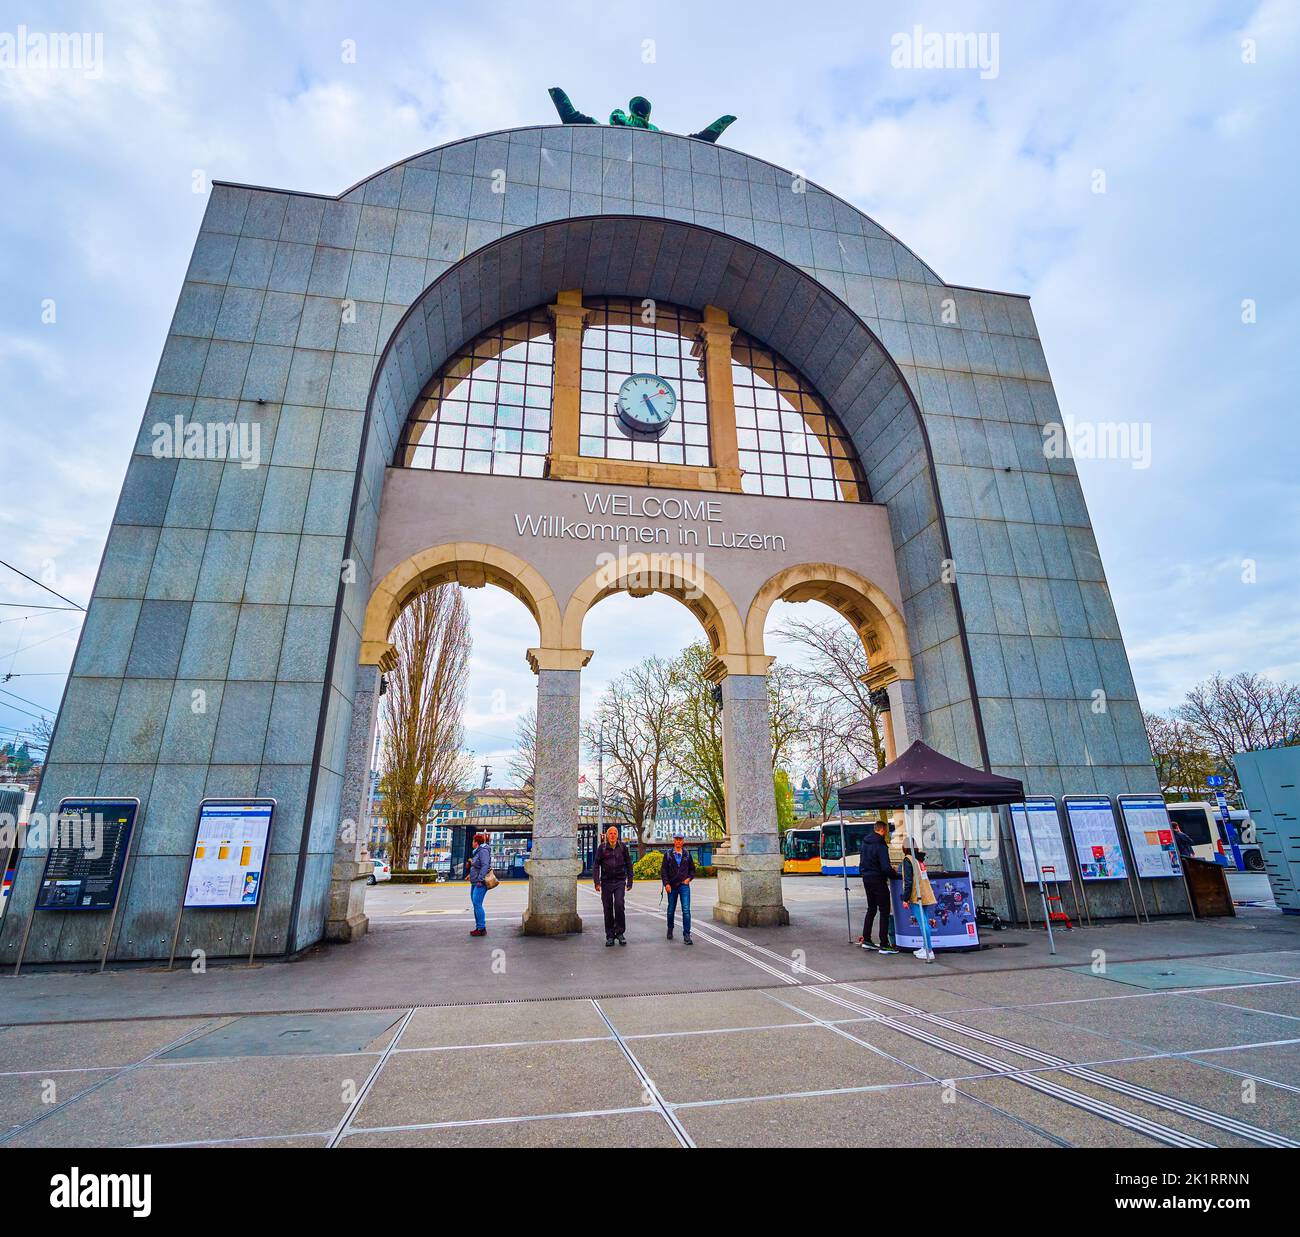 LUCERNA, SVIZZERA - 30 MARZO 2022: Il moderno retro dell'arco storico con cartello di benvenuto di fronte alla stazione ferroviaria di Lucerna, il 30 marzo Foto Stock